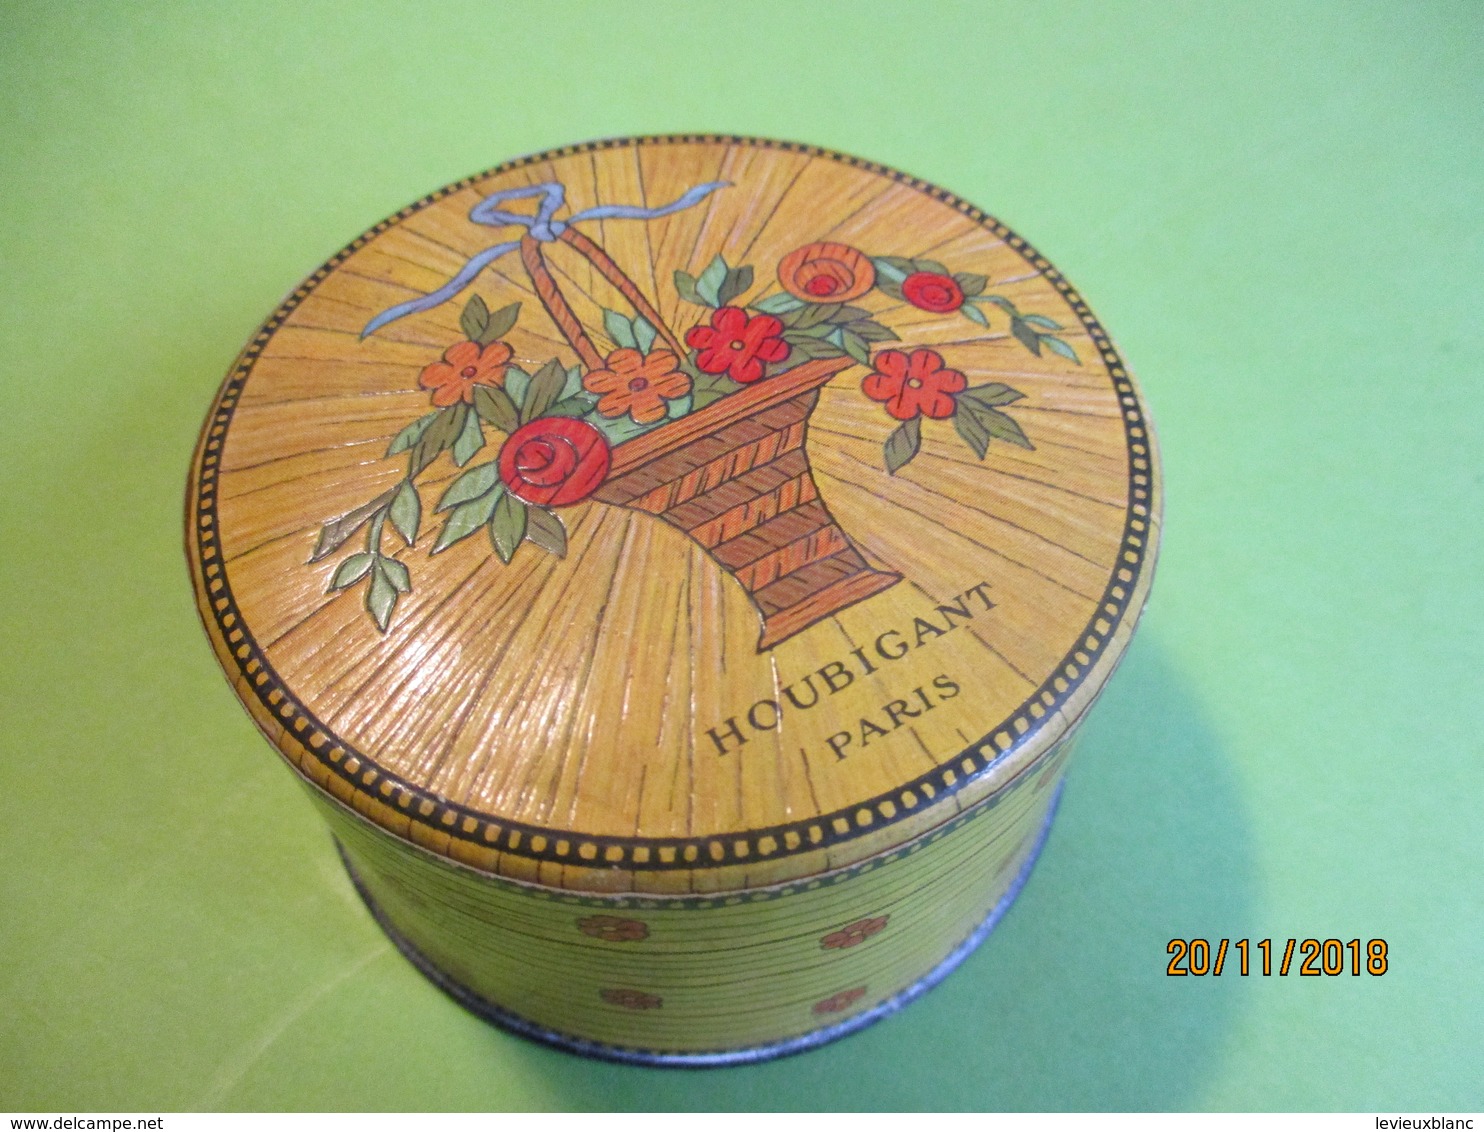 Maquillage/Boite De Poudre De Riz/HOUBIGANT/Paris/ Quelques Fleurs Naturelles/Vers 1930-50    PARF184 - Produits De Beauté